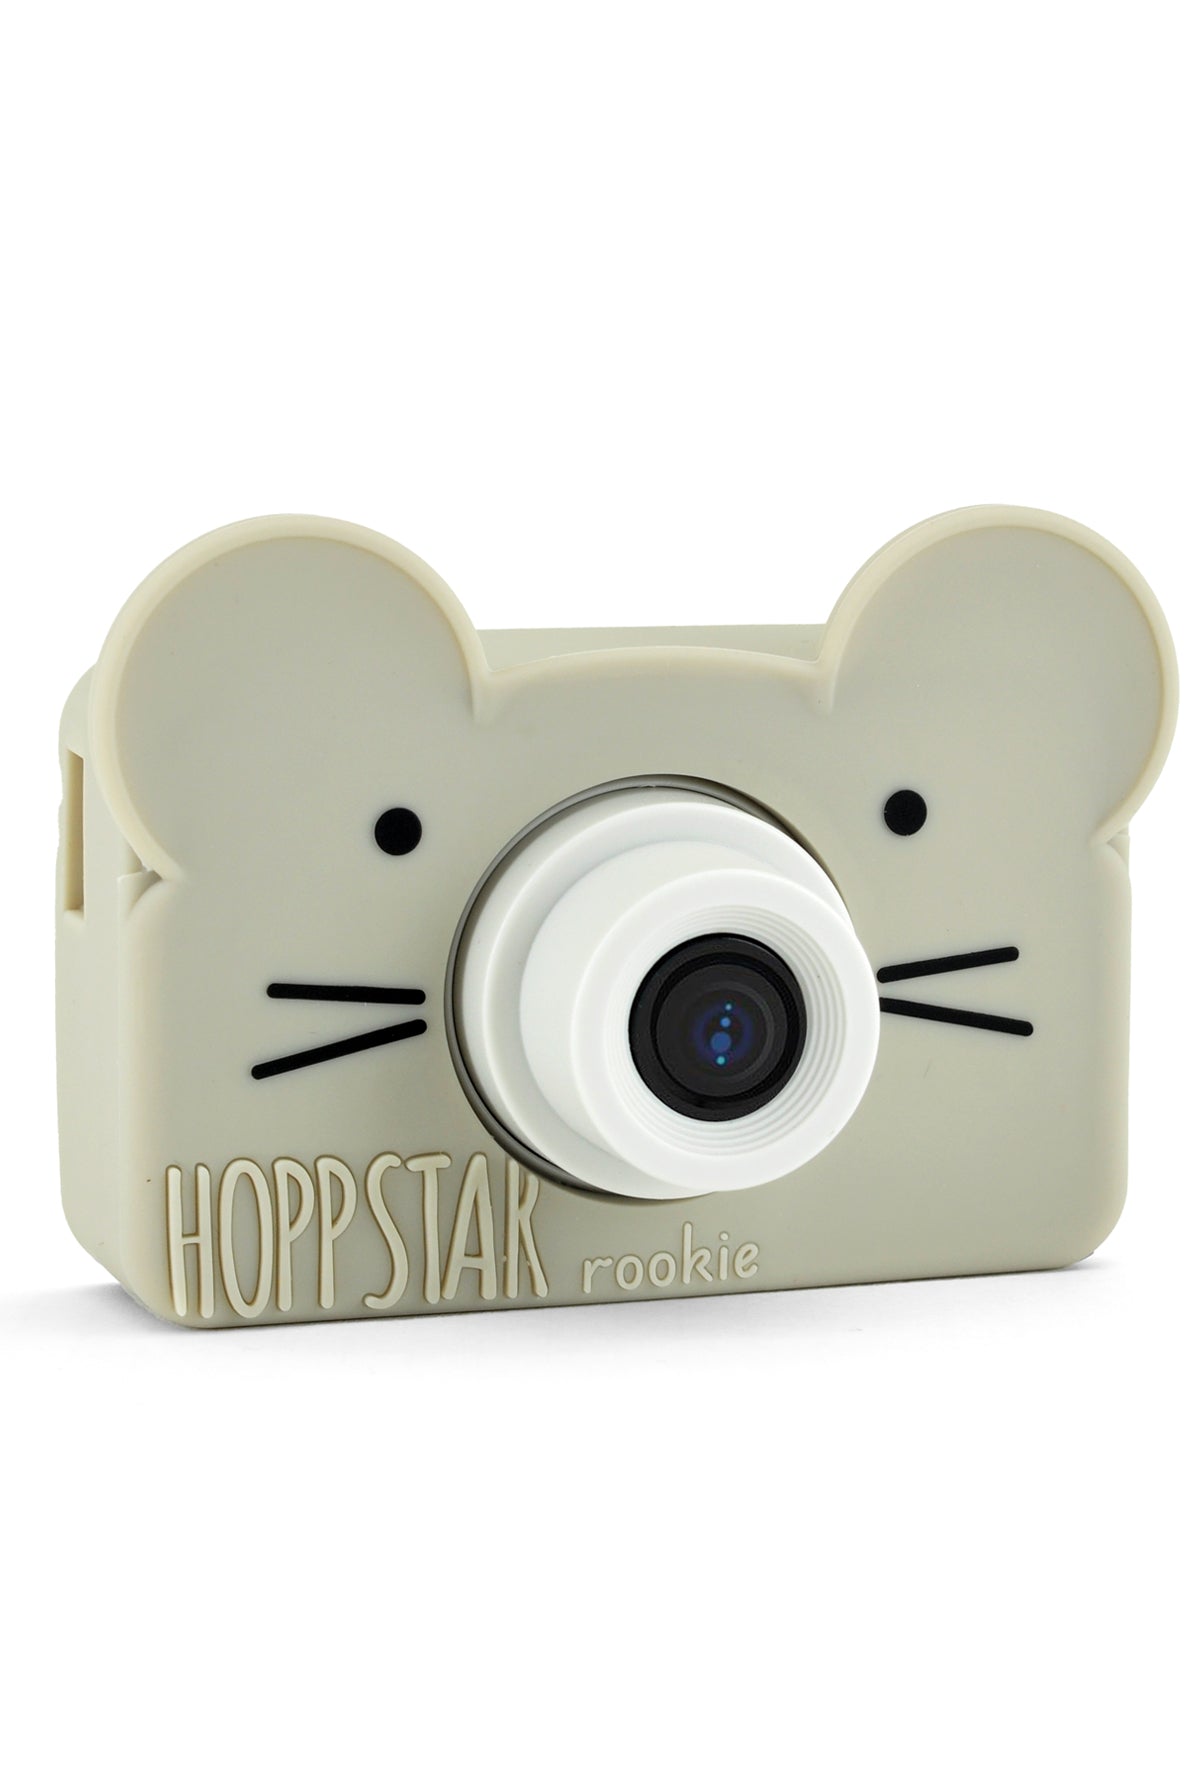 Hoppstar Rookie Oat Digital Camera